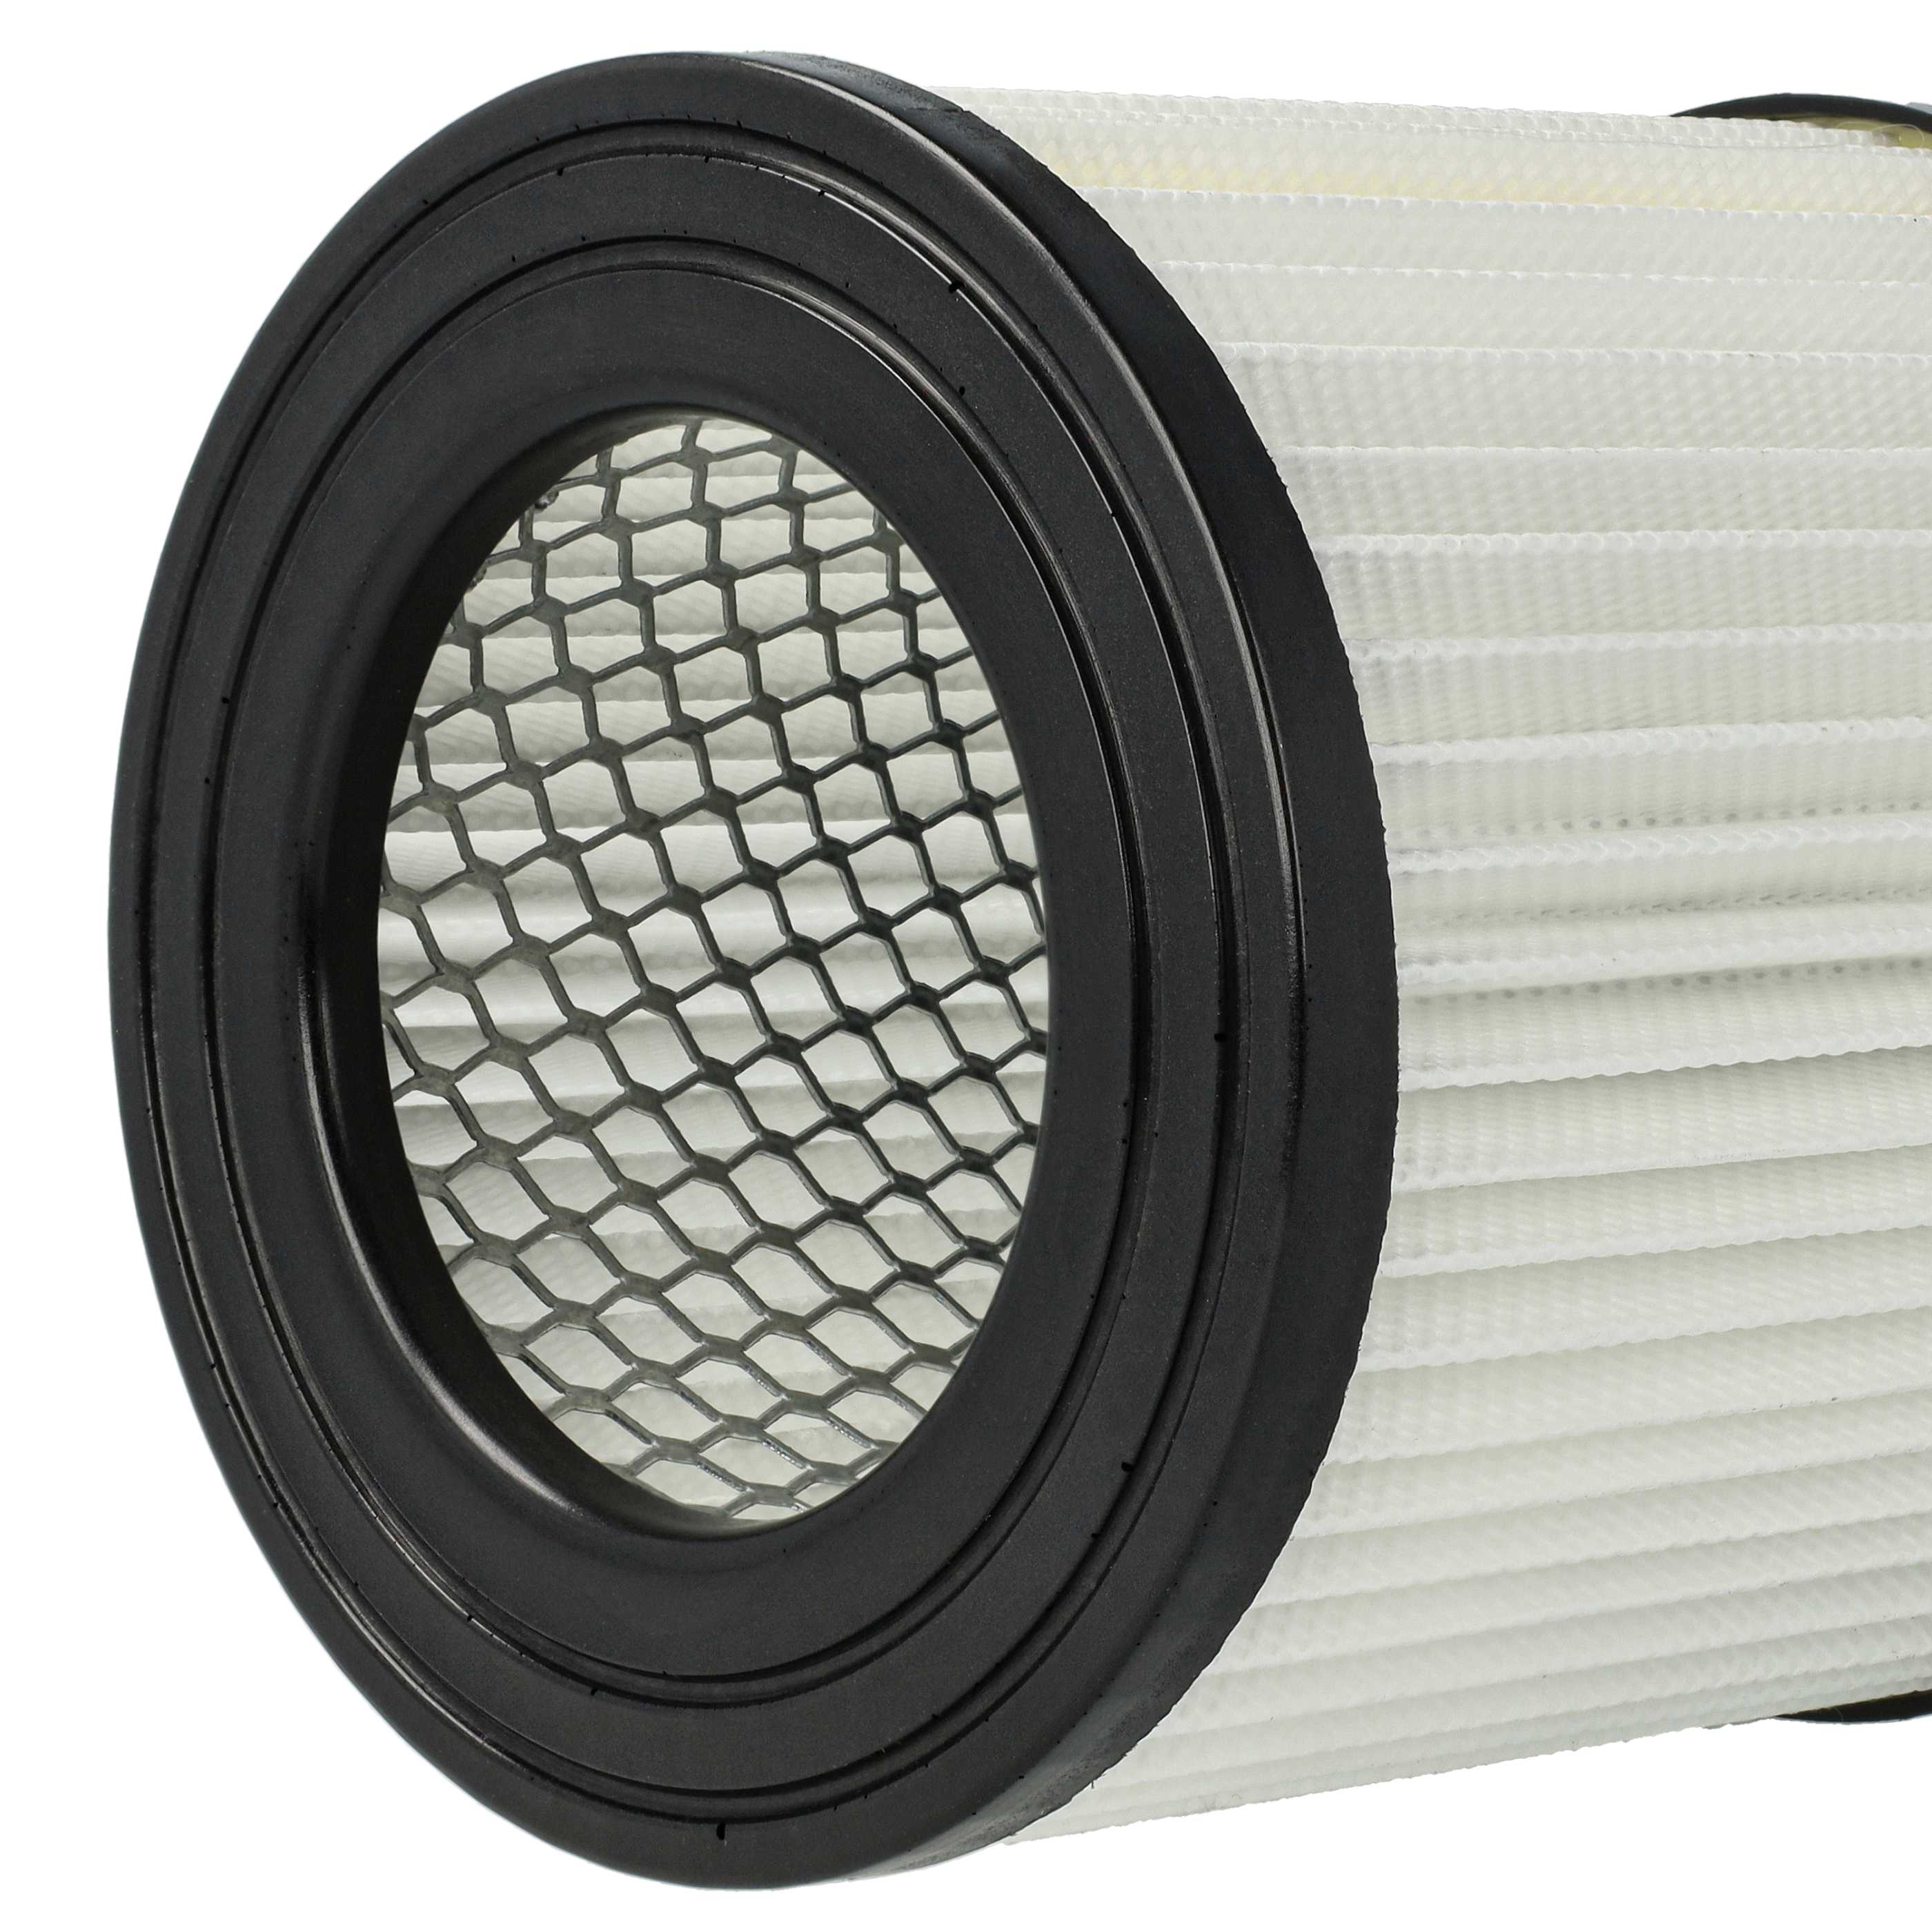 3x Filtres remplace Scheppach 7907702702 pour aspirateur - filtre HEPA